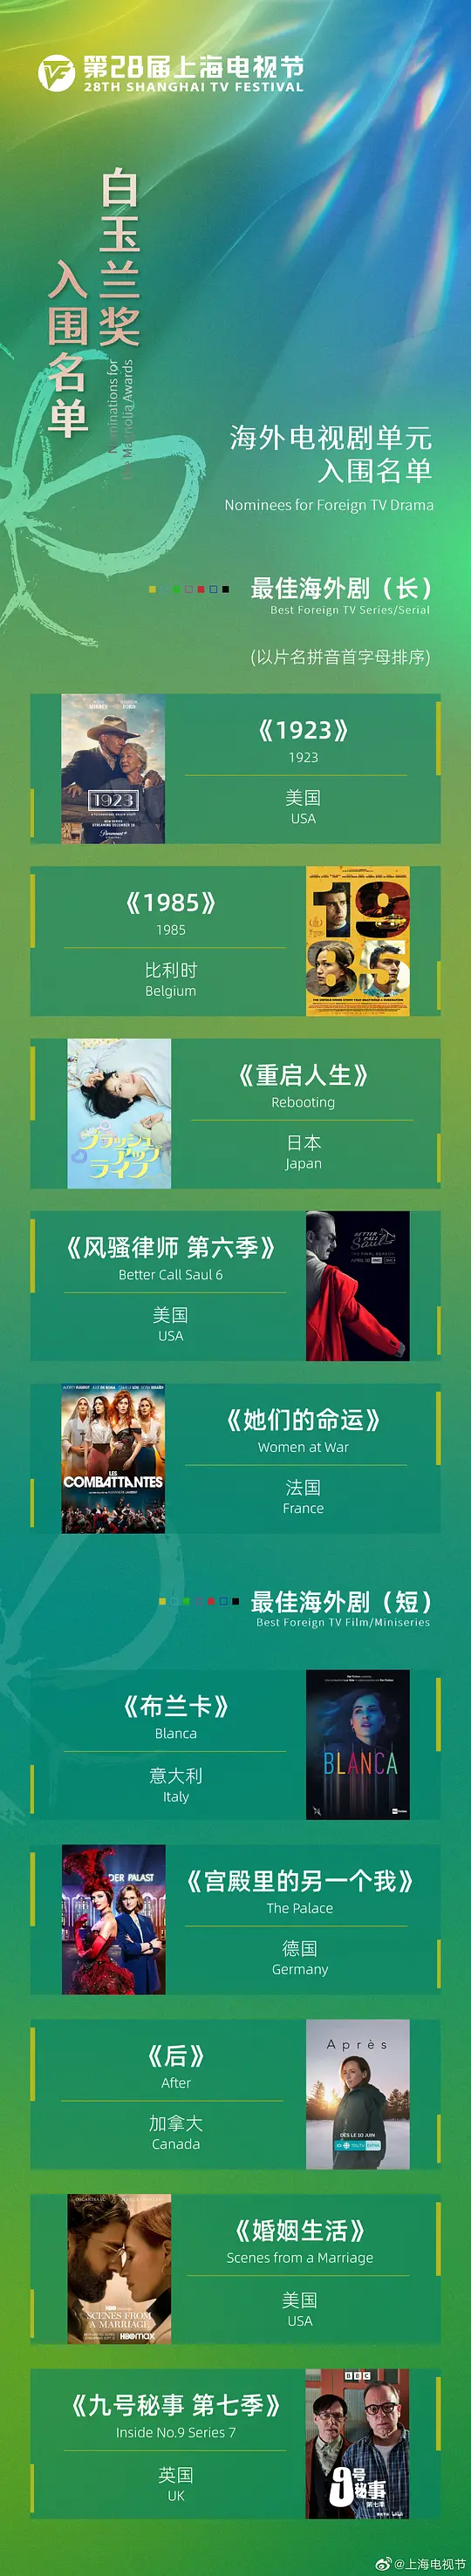 第28届上海电视节颁奖典礼高清完整免费手机播放